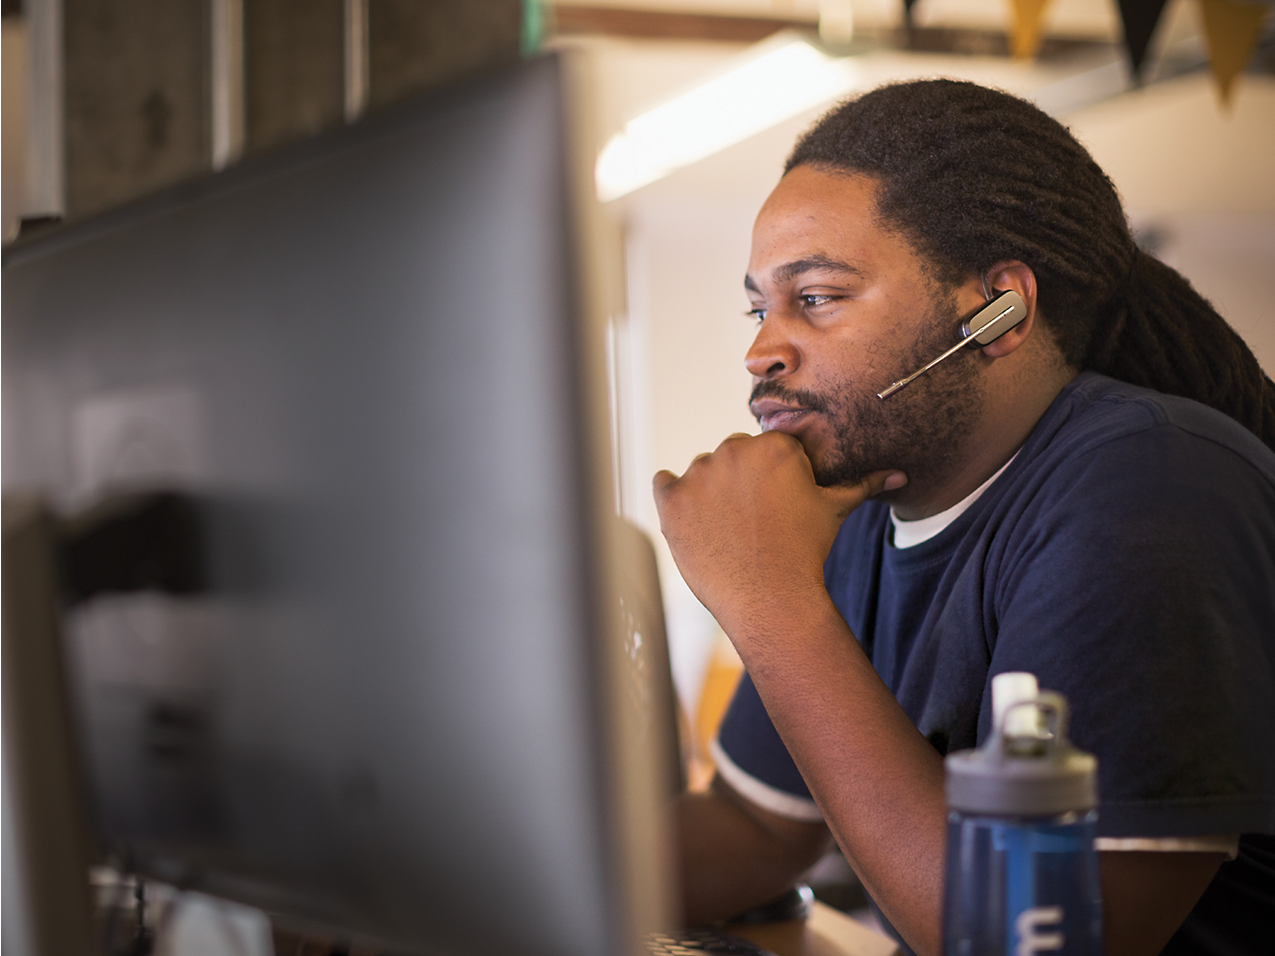 Ένας άντρας με ακουστικά εργάζεται σκόπιμα σε έναν υπολογιστή σε ένα περιβάλλον γραφείου, χέρι με πρόσωπο, βαθιά στη σκέψη.